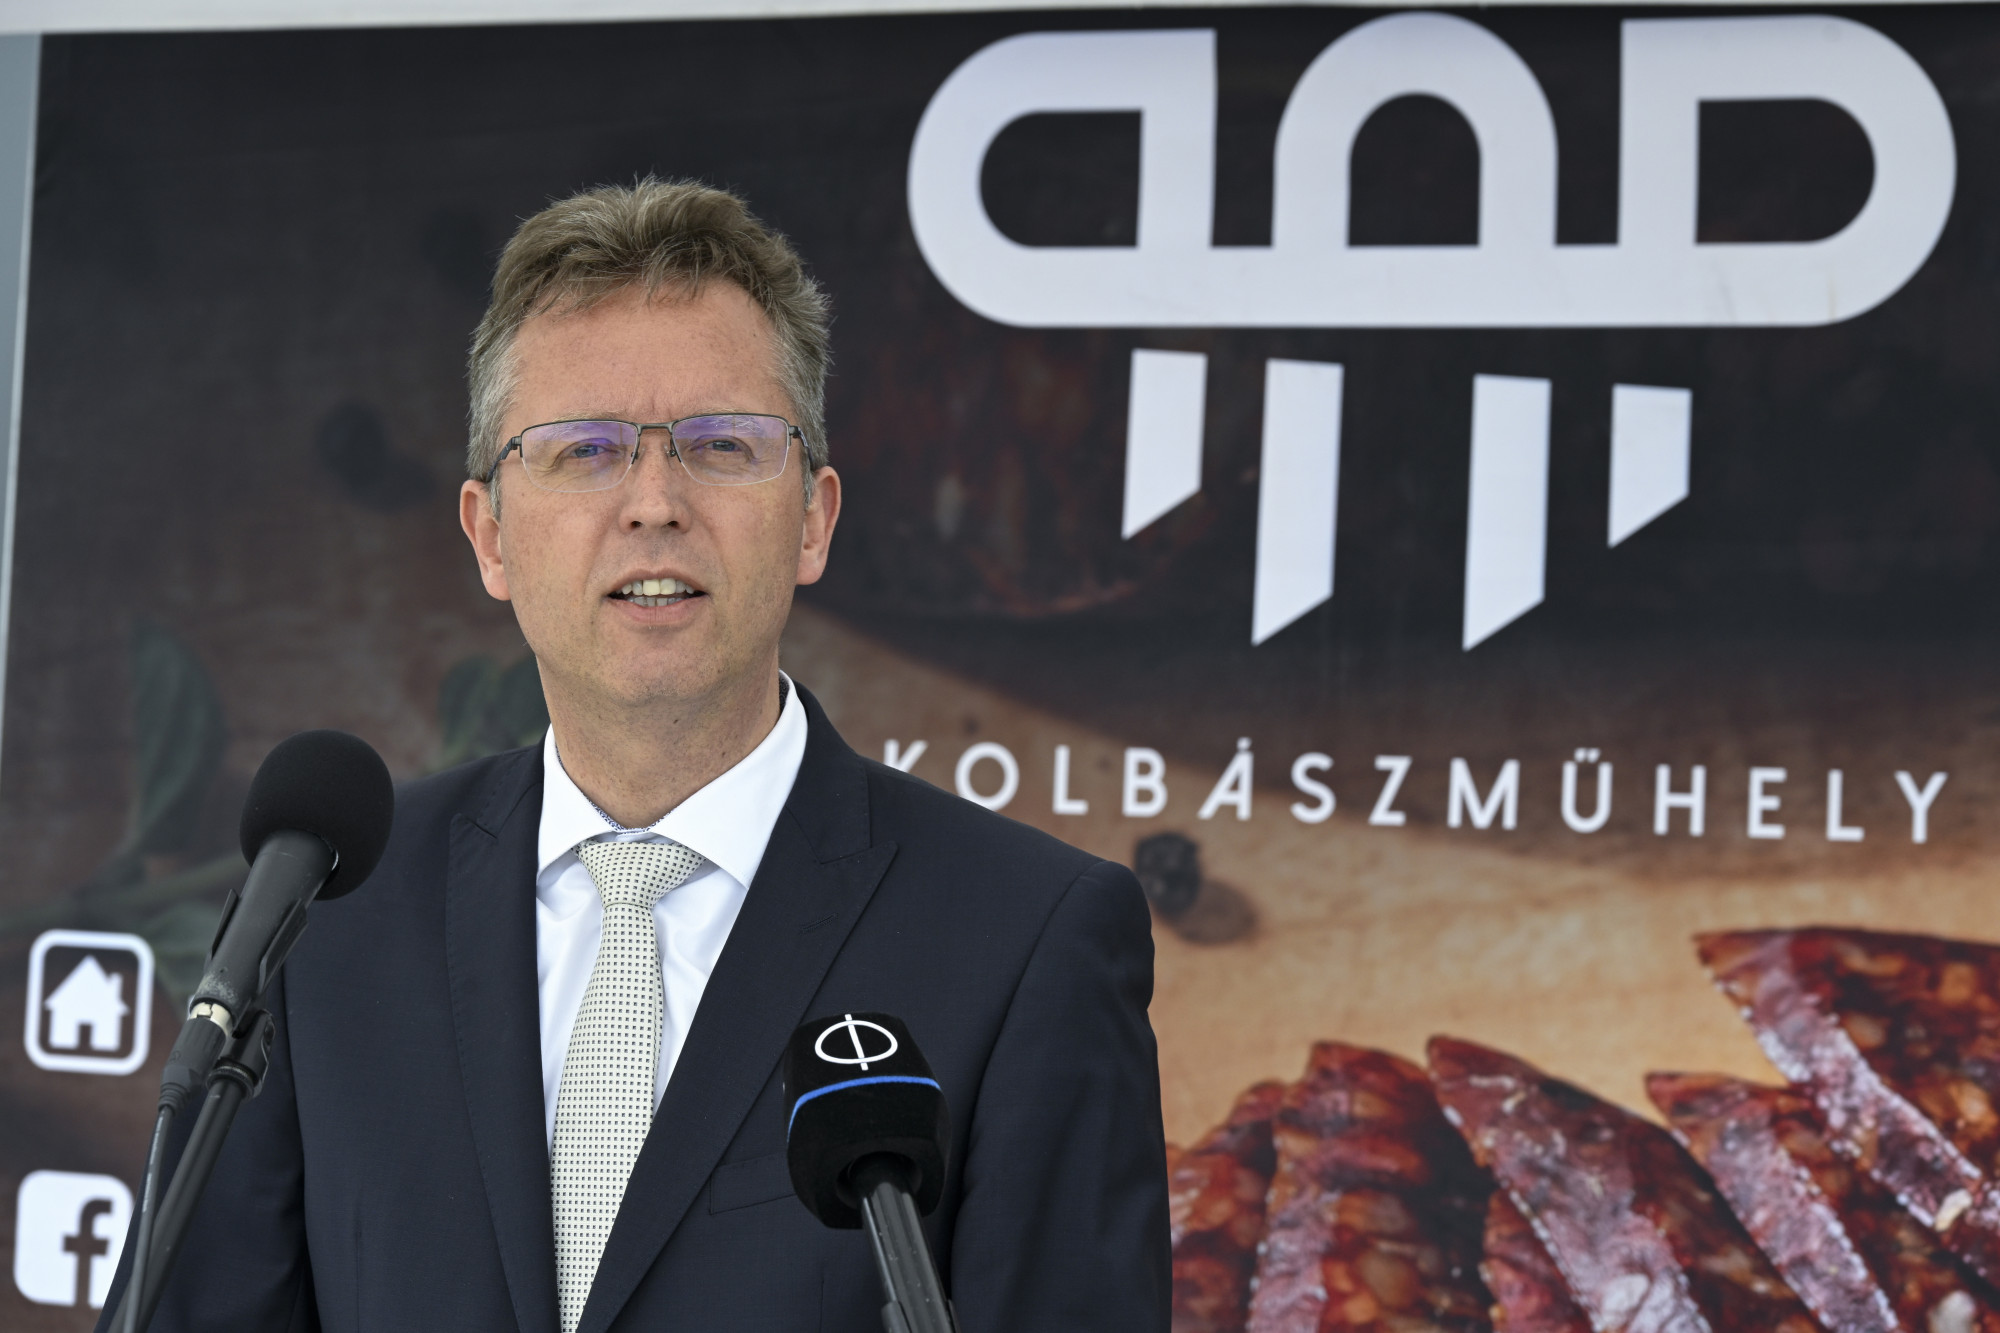 A világ legjobb dolga magyarnak lenni, mondta Hankó Balázs, új kulturális miniszter